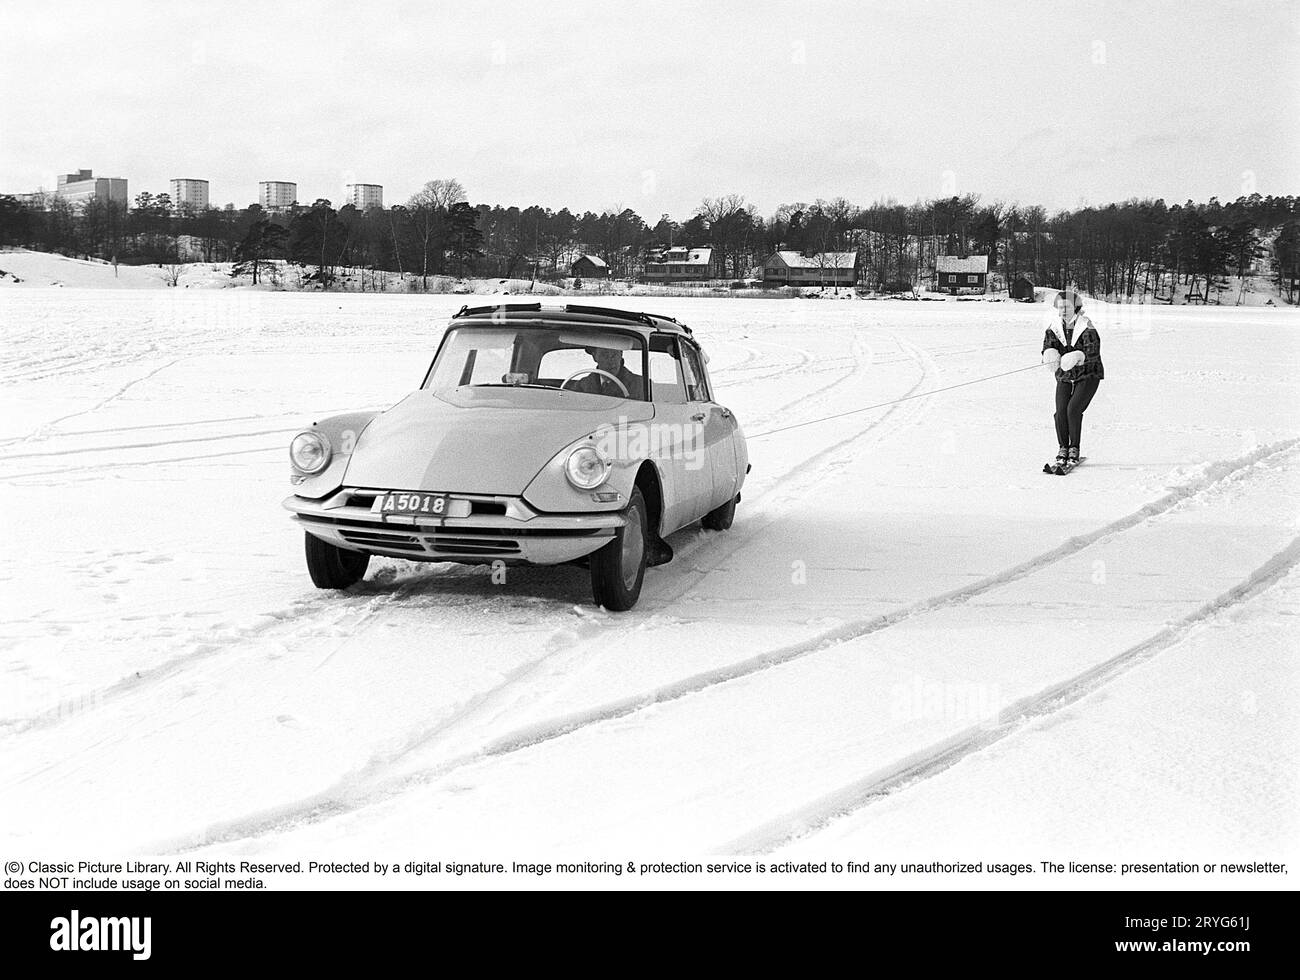 Ein Wintertag in den 1960er Jahren Eine Frau fährt hinter einem Auto. A Citroën. Es muss ziemlich dickes Eis auf dem See gewesen sein, weil der Fahrer es wagte, auf dem Eis zu fahren, aber selbst die Frau muss mutig gewesen sein, als sie sicher Geschwindigkeit auf ihren Skiern nahm, als sie an einem Seil mit einem Griff hinter dem Auto an hielt volle Geschwindigkeit. Schweden 1962. Conard Ref. 4561 Stockfoto